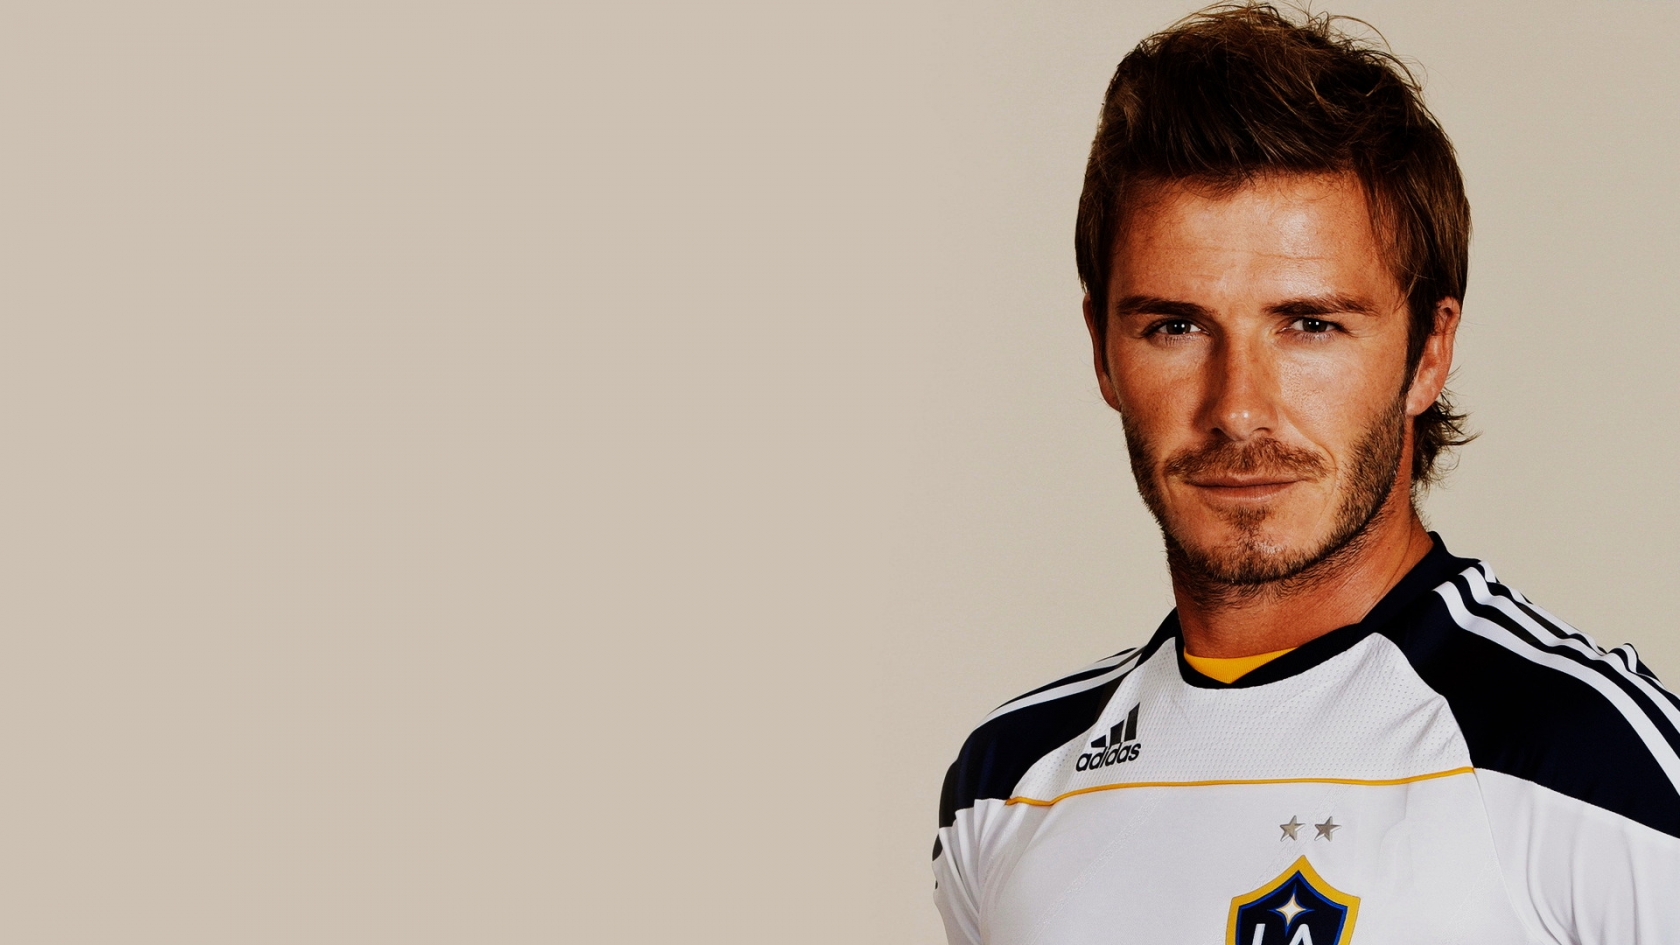 David Beckham Smile for 1680 x 945 HDTV resolution